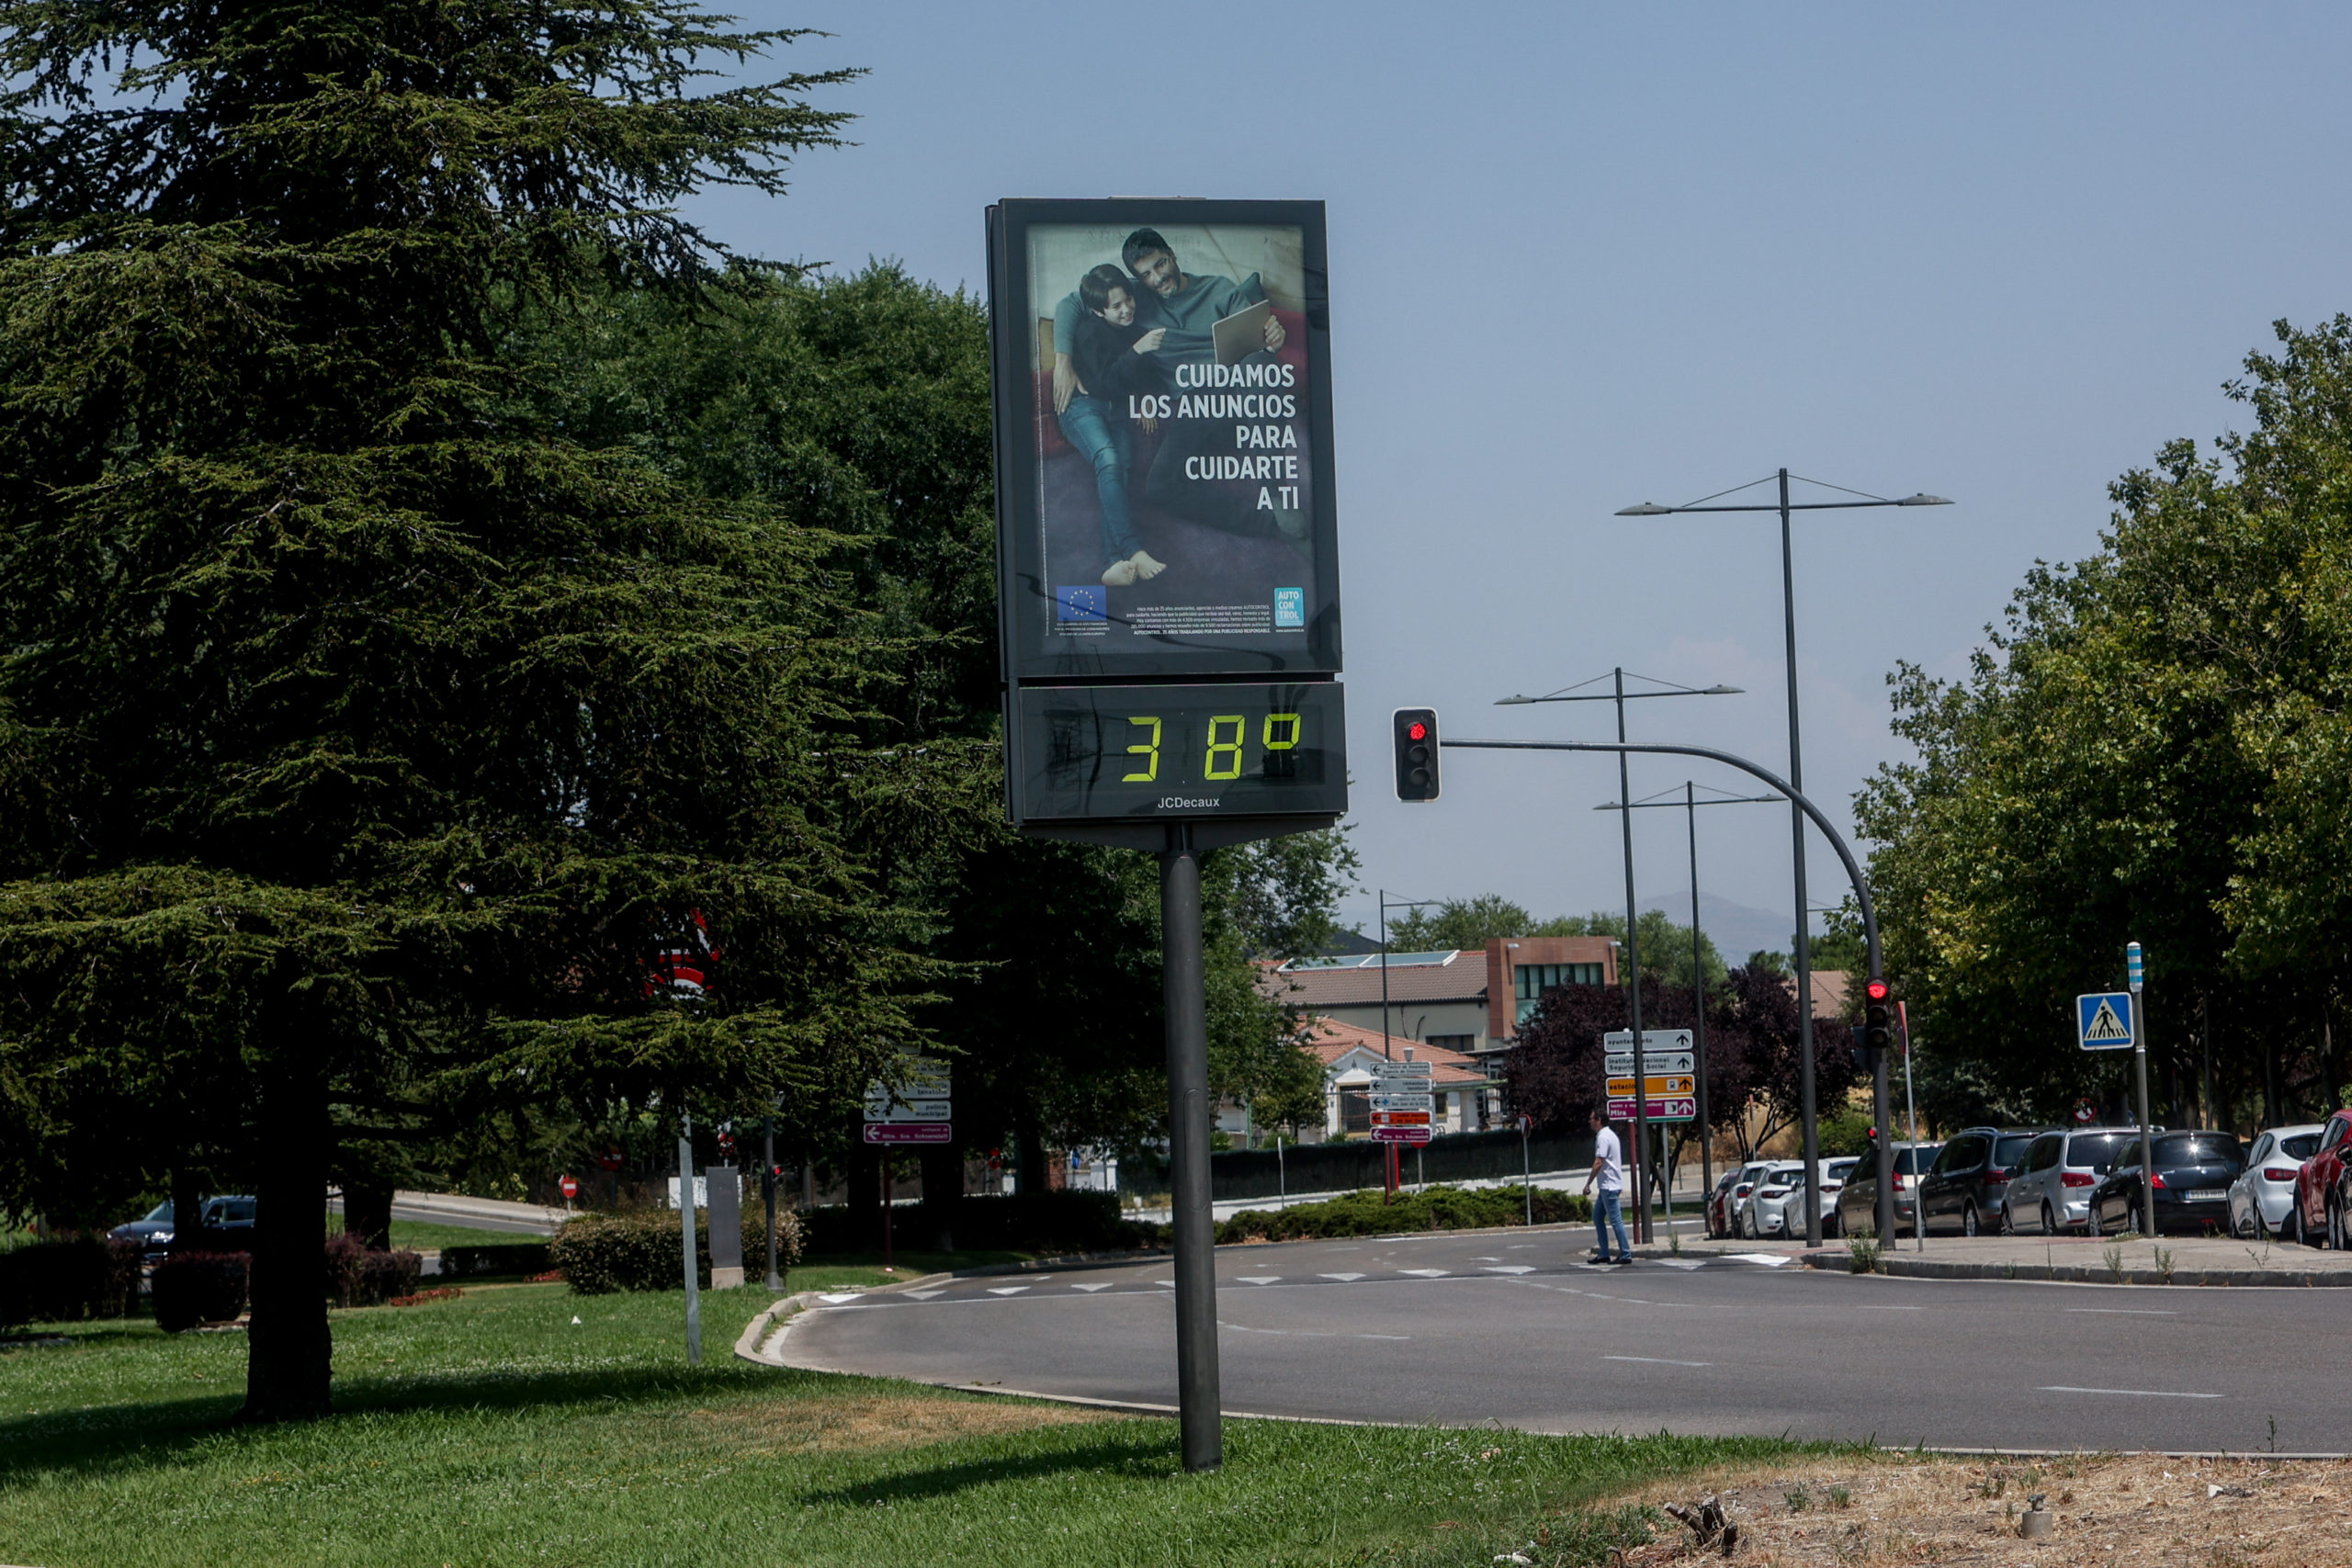 Madrid mantiene el Nivel de Alto Riesgo de Calor ante la previsión de temperaturas